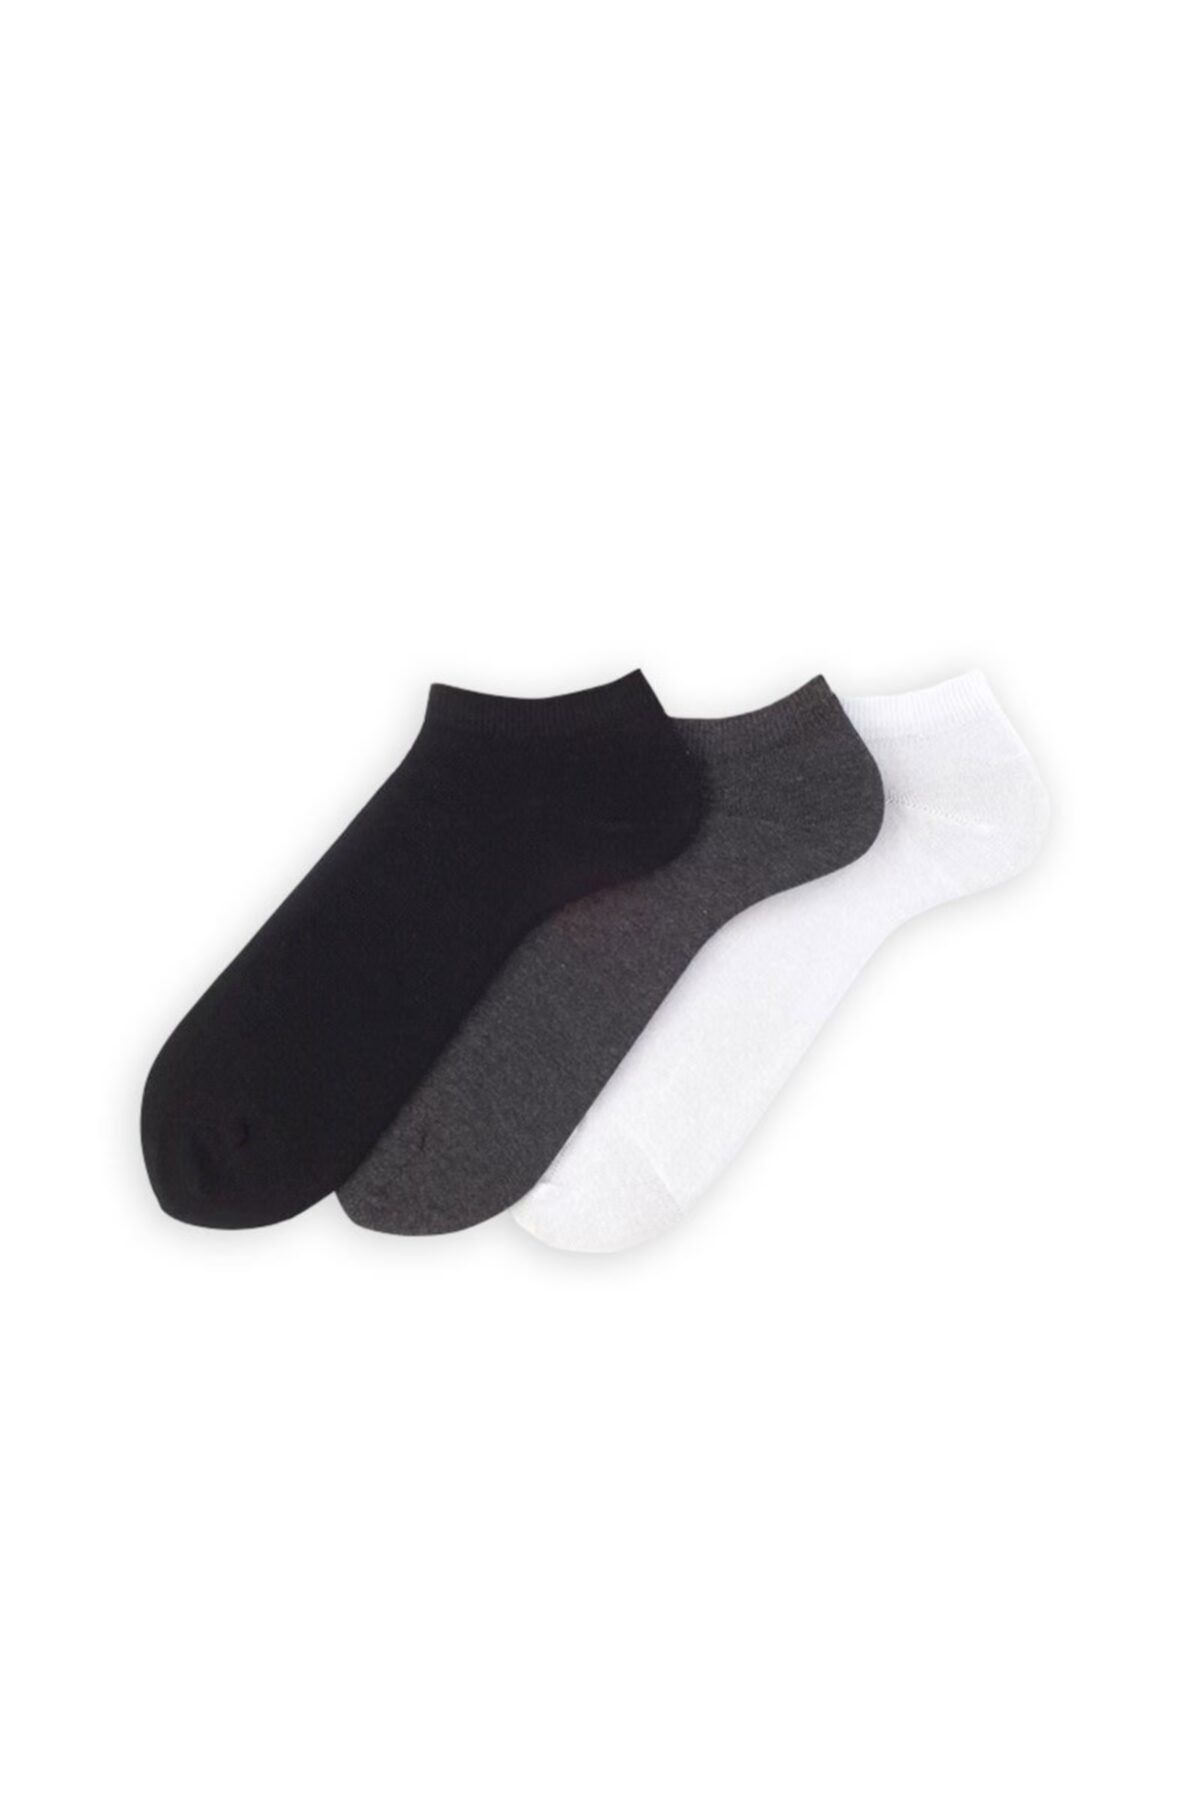 MIOVELA Basic Karışık Renkli Patik Çorap 3'lü